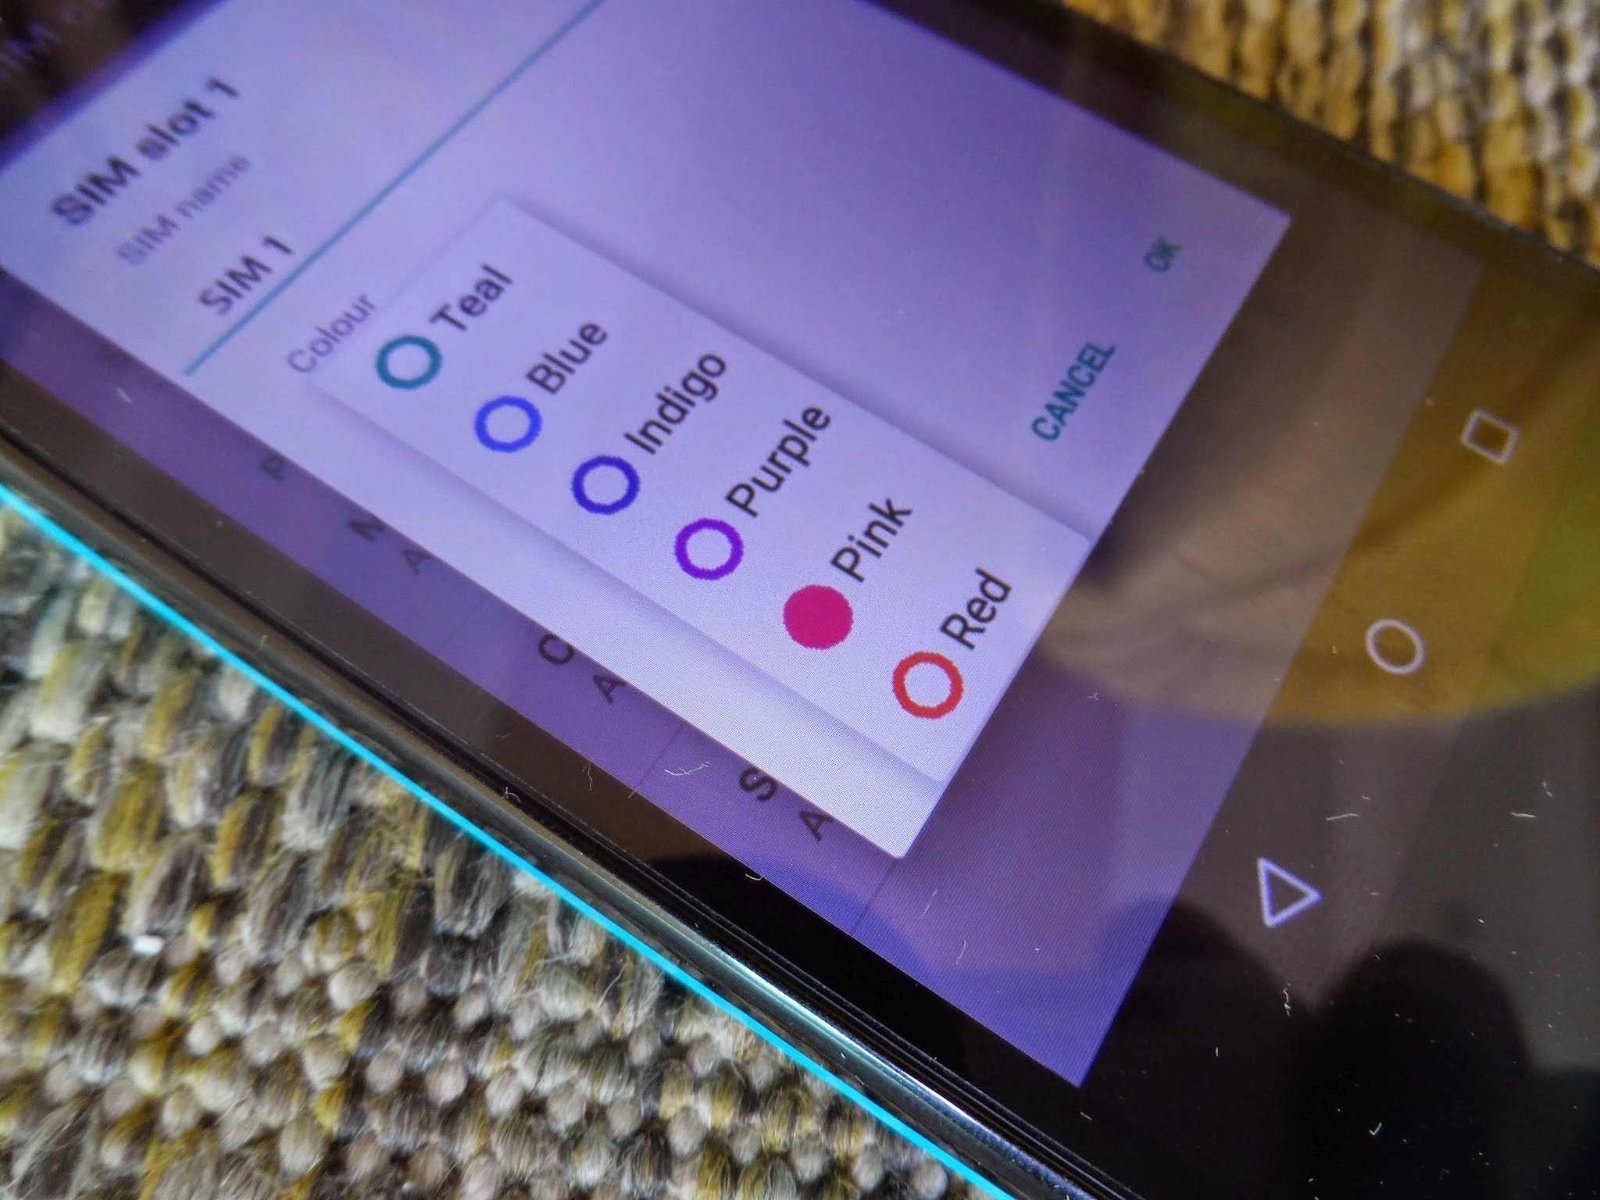 Aparece en fotos Android 5.1 Lollipop en un Motorola Moto G 2013